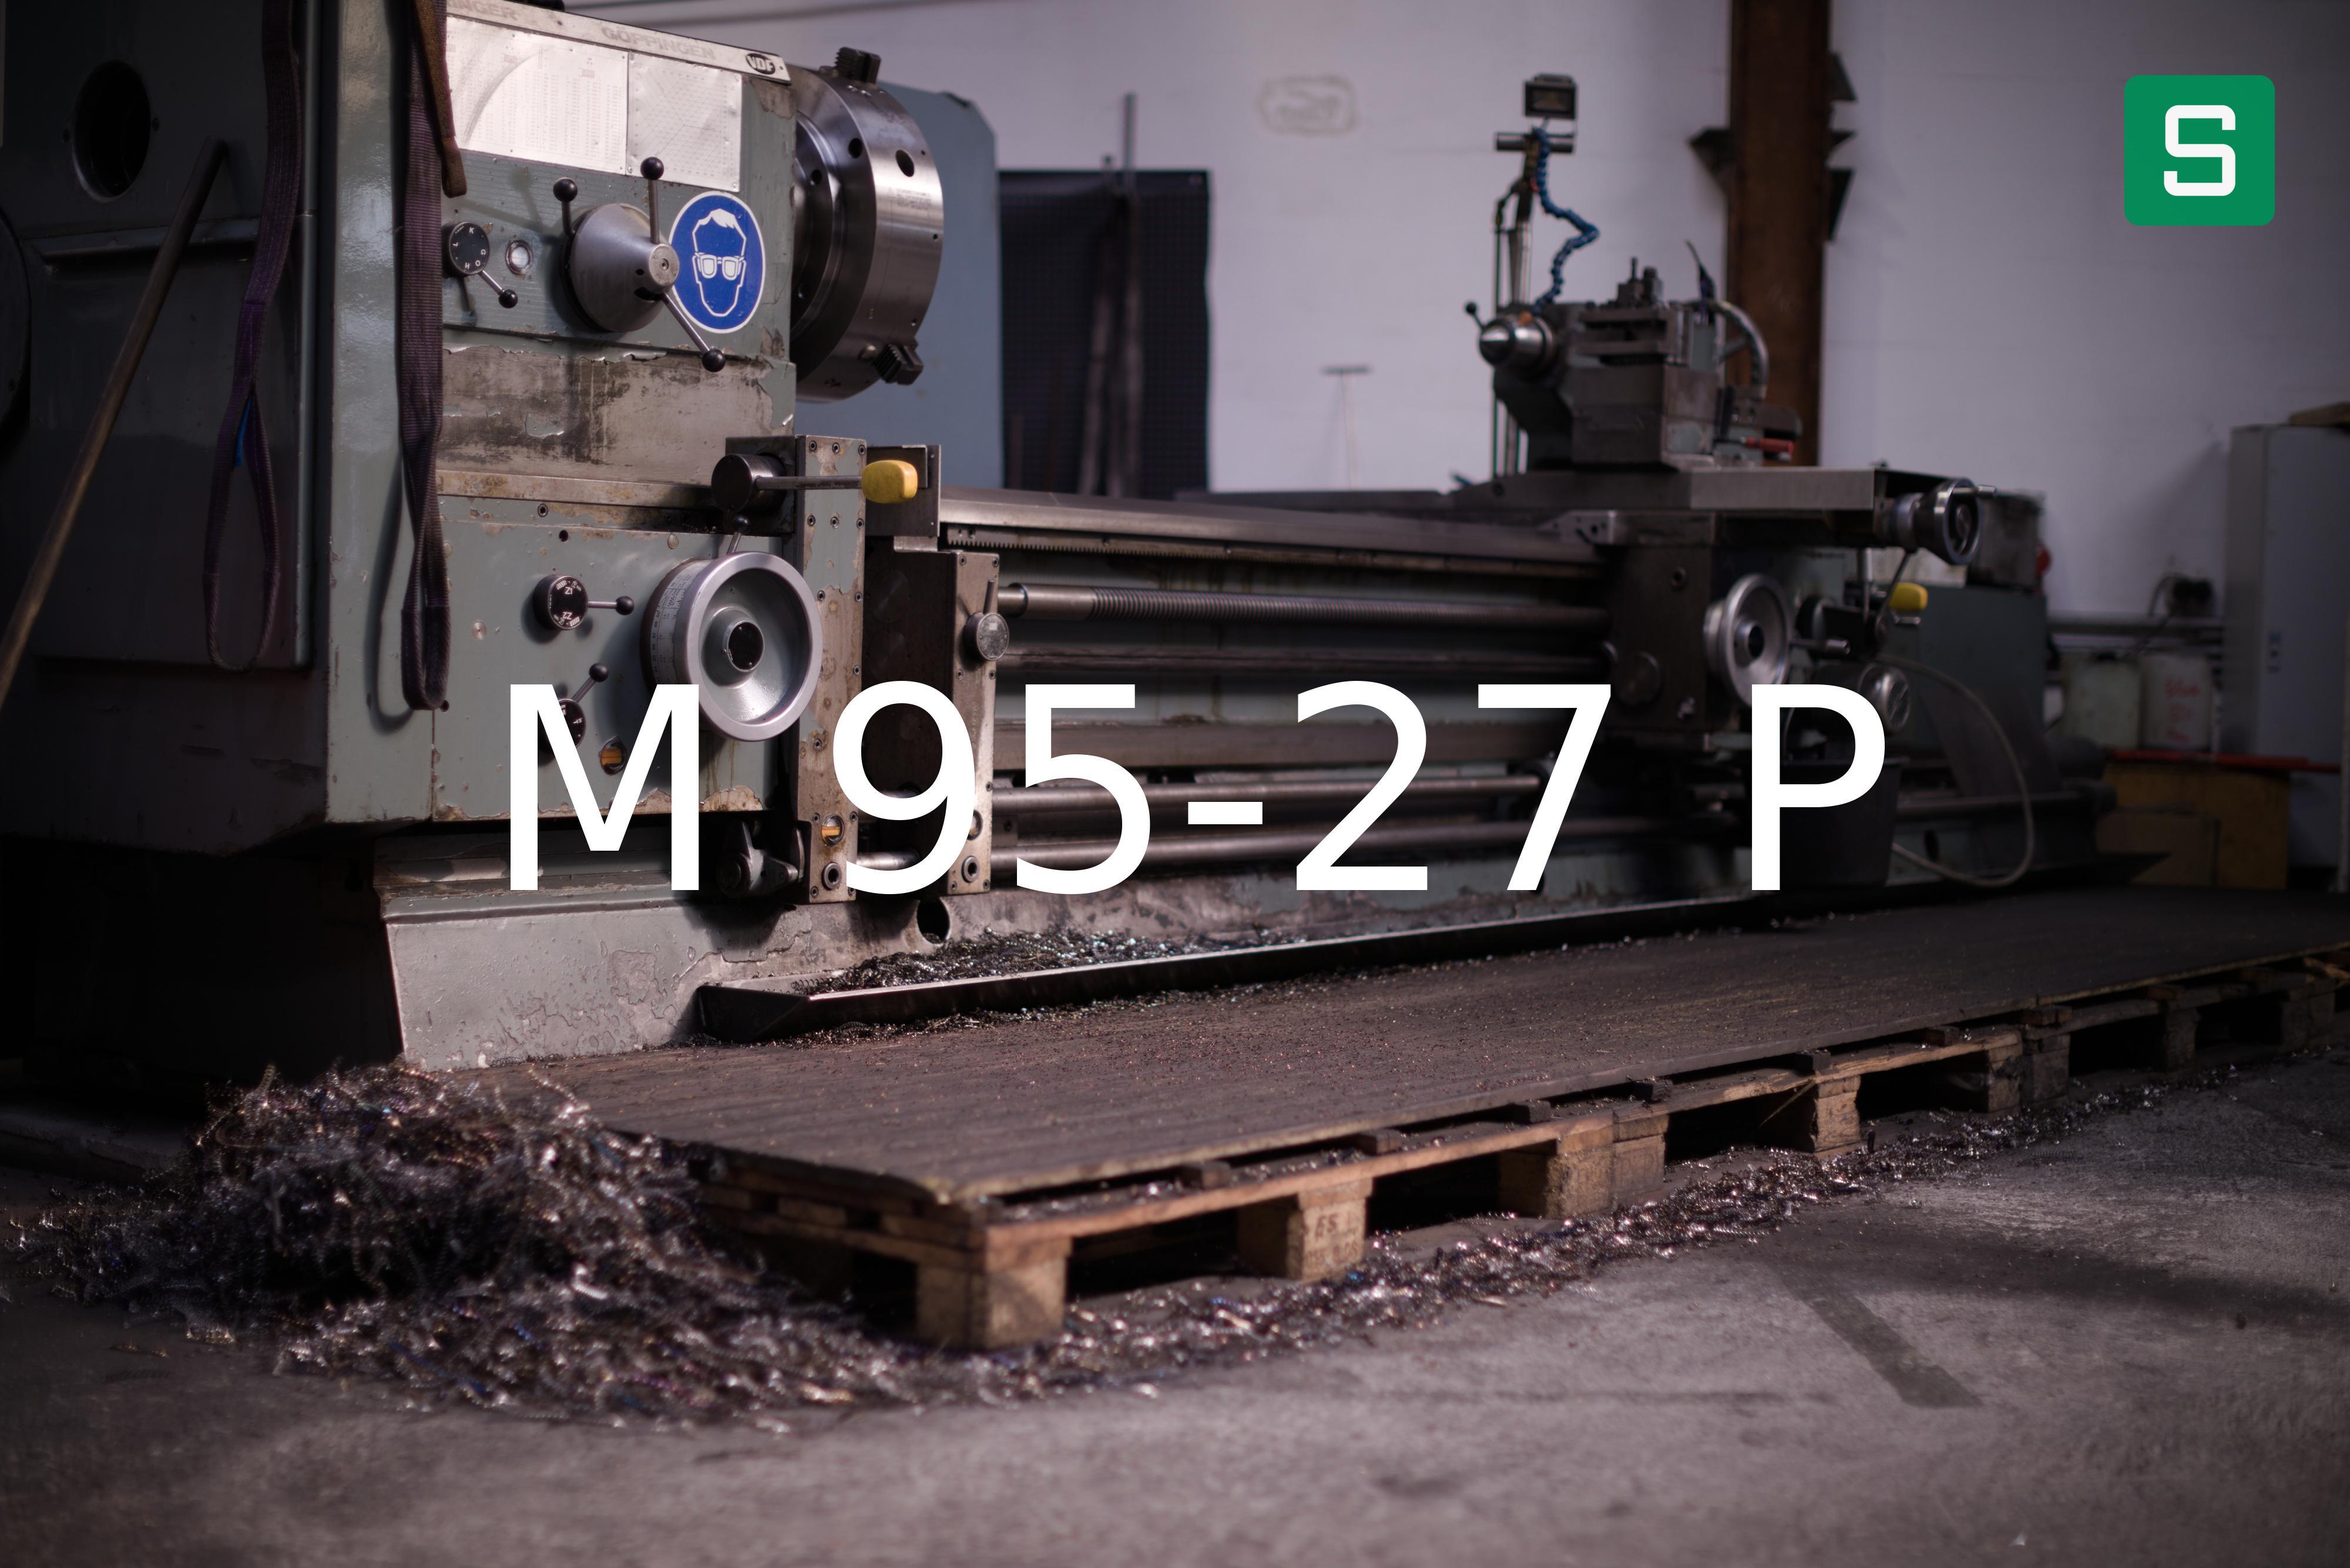 Steel Material: M 95-27 P